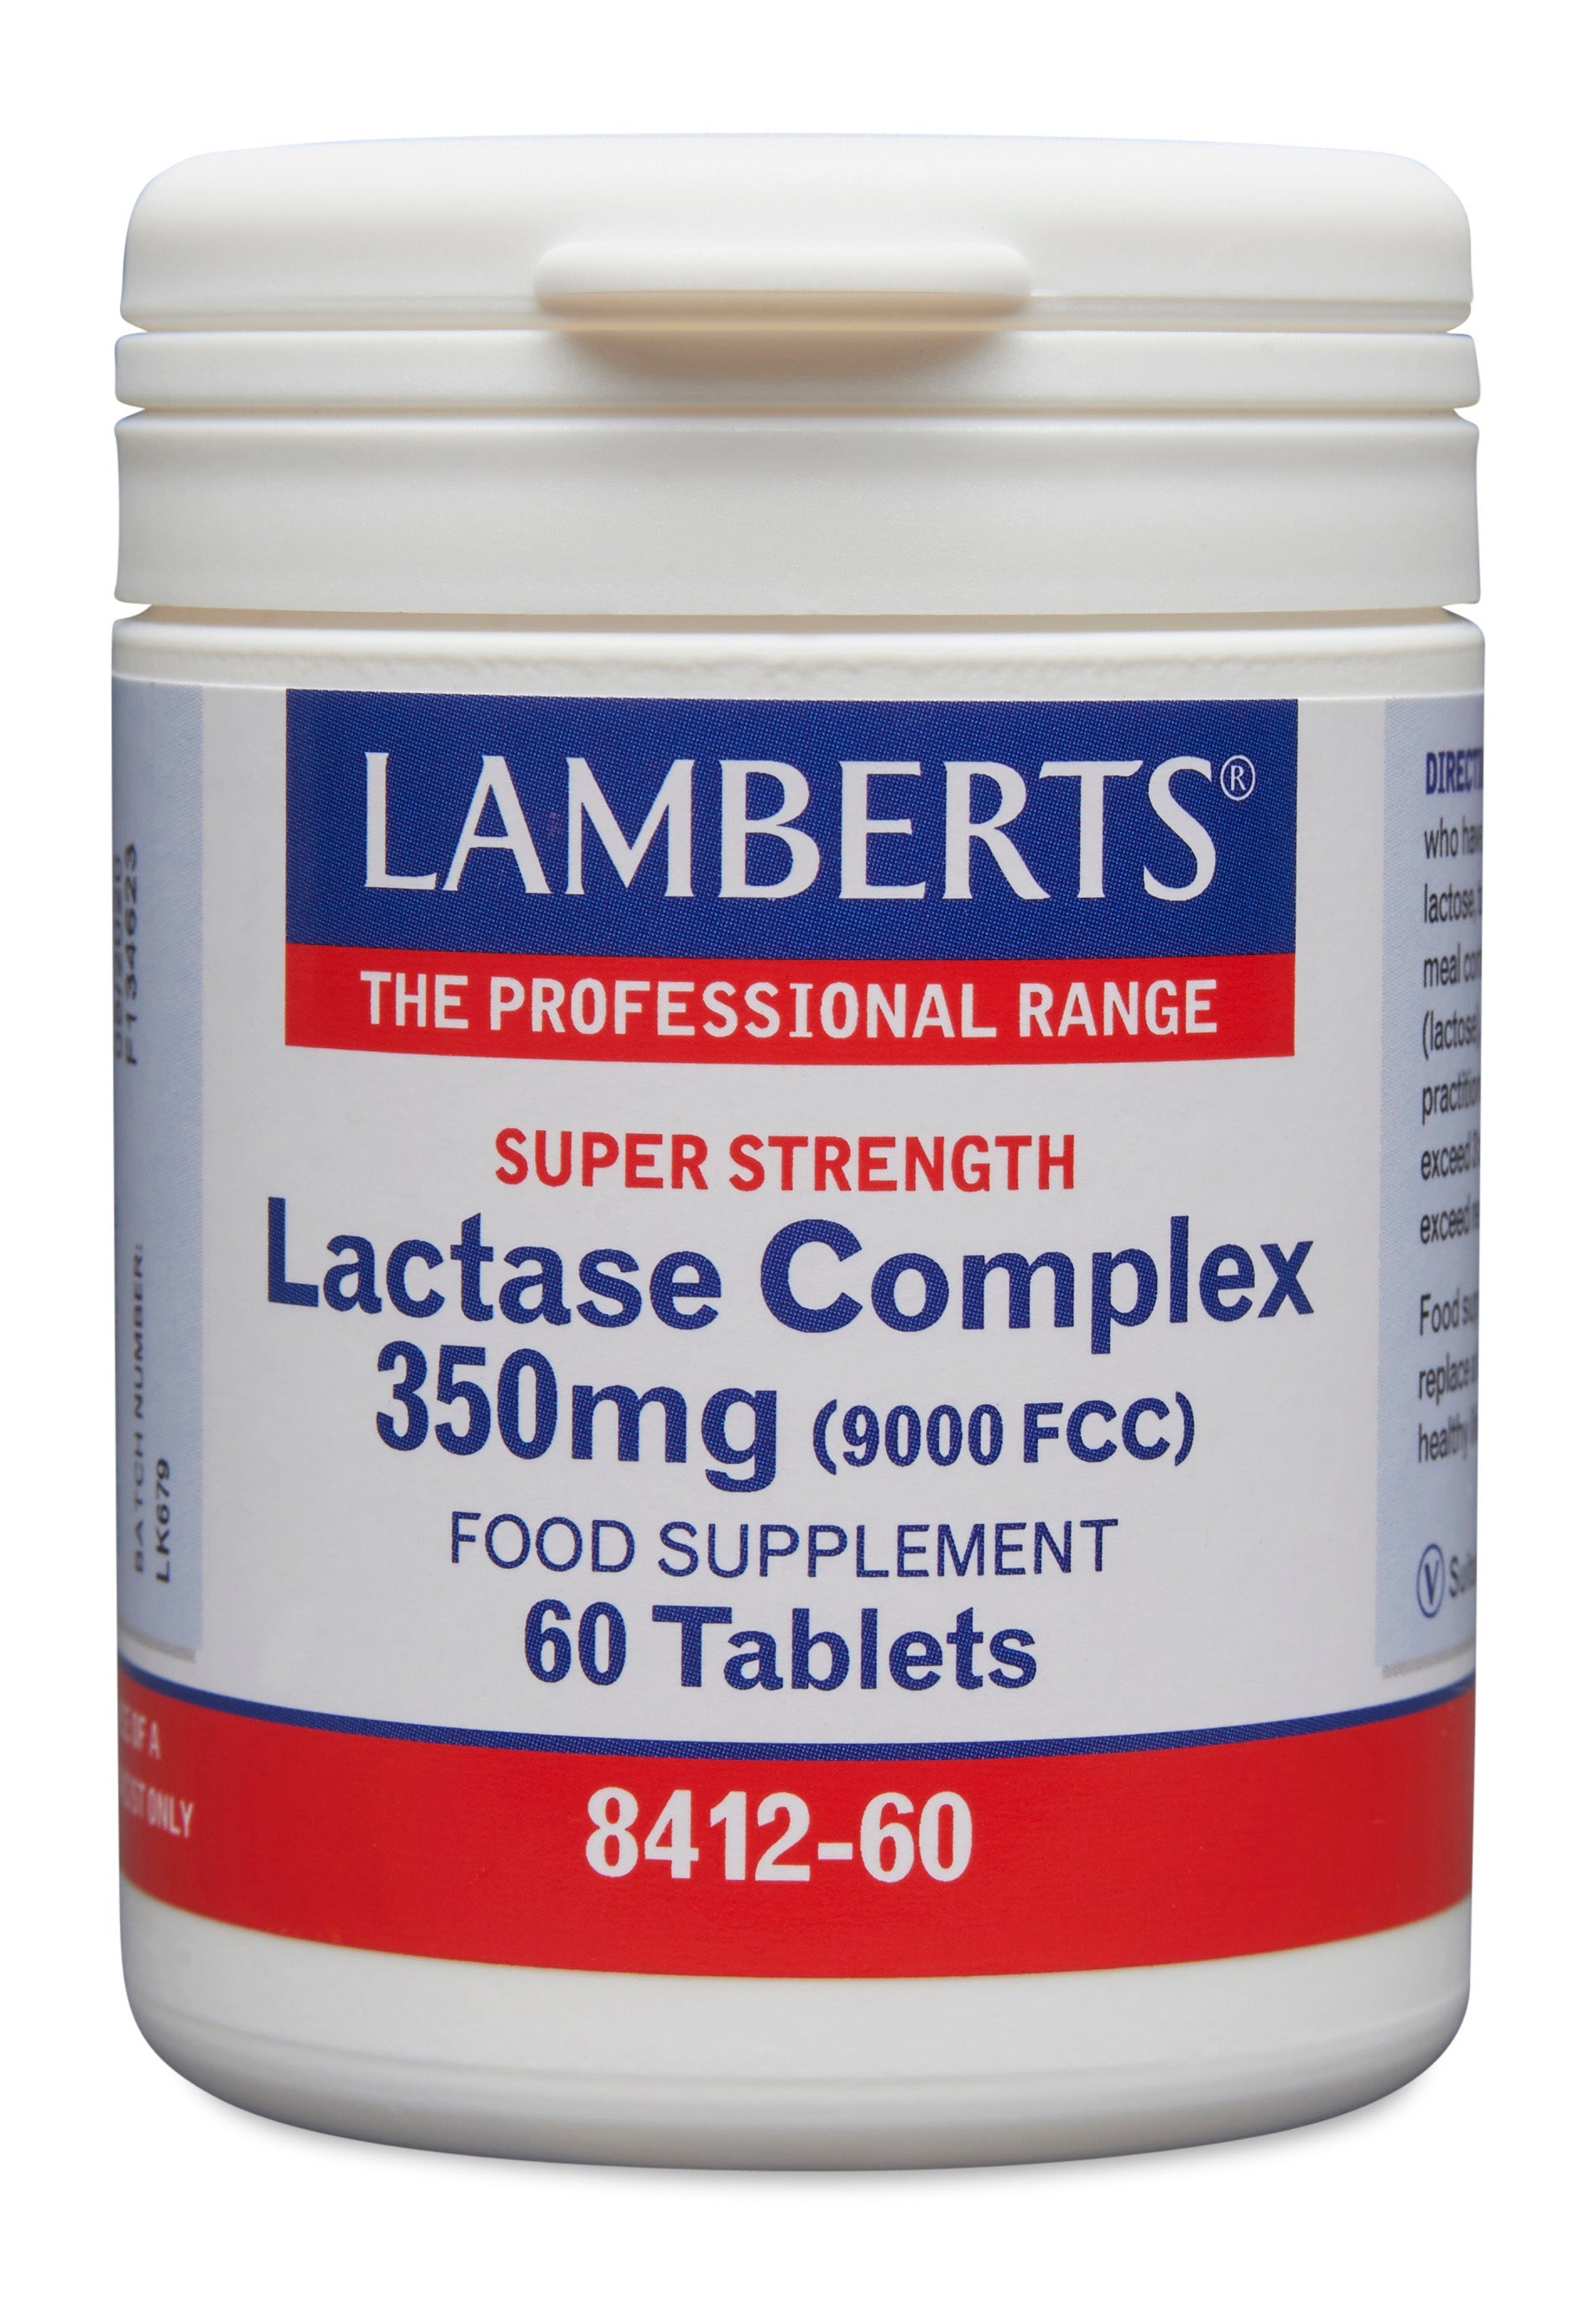 lamberts - 60 Tablets Lactase Complex 350mg (9000FCC)